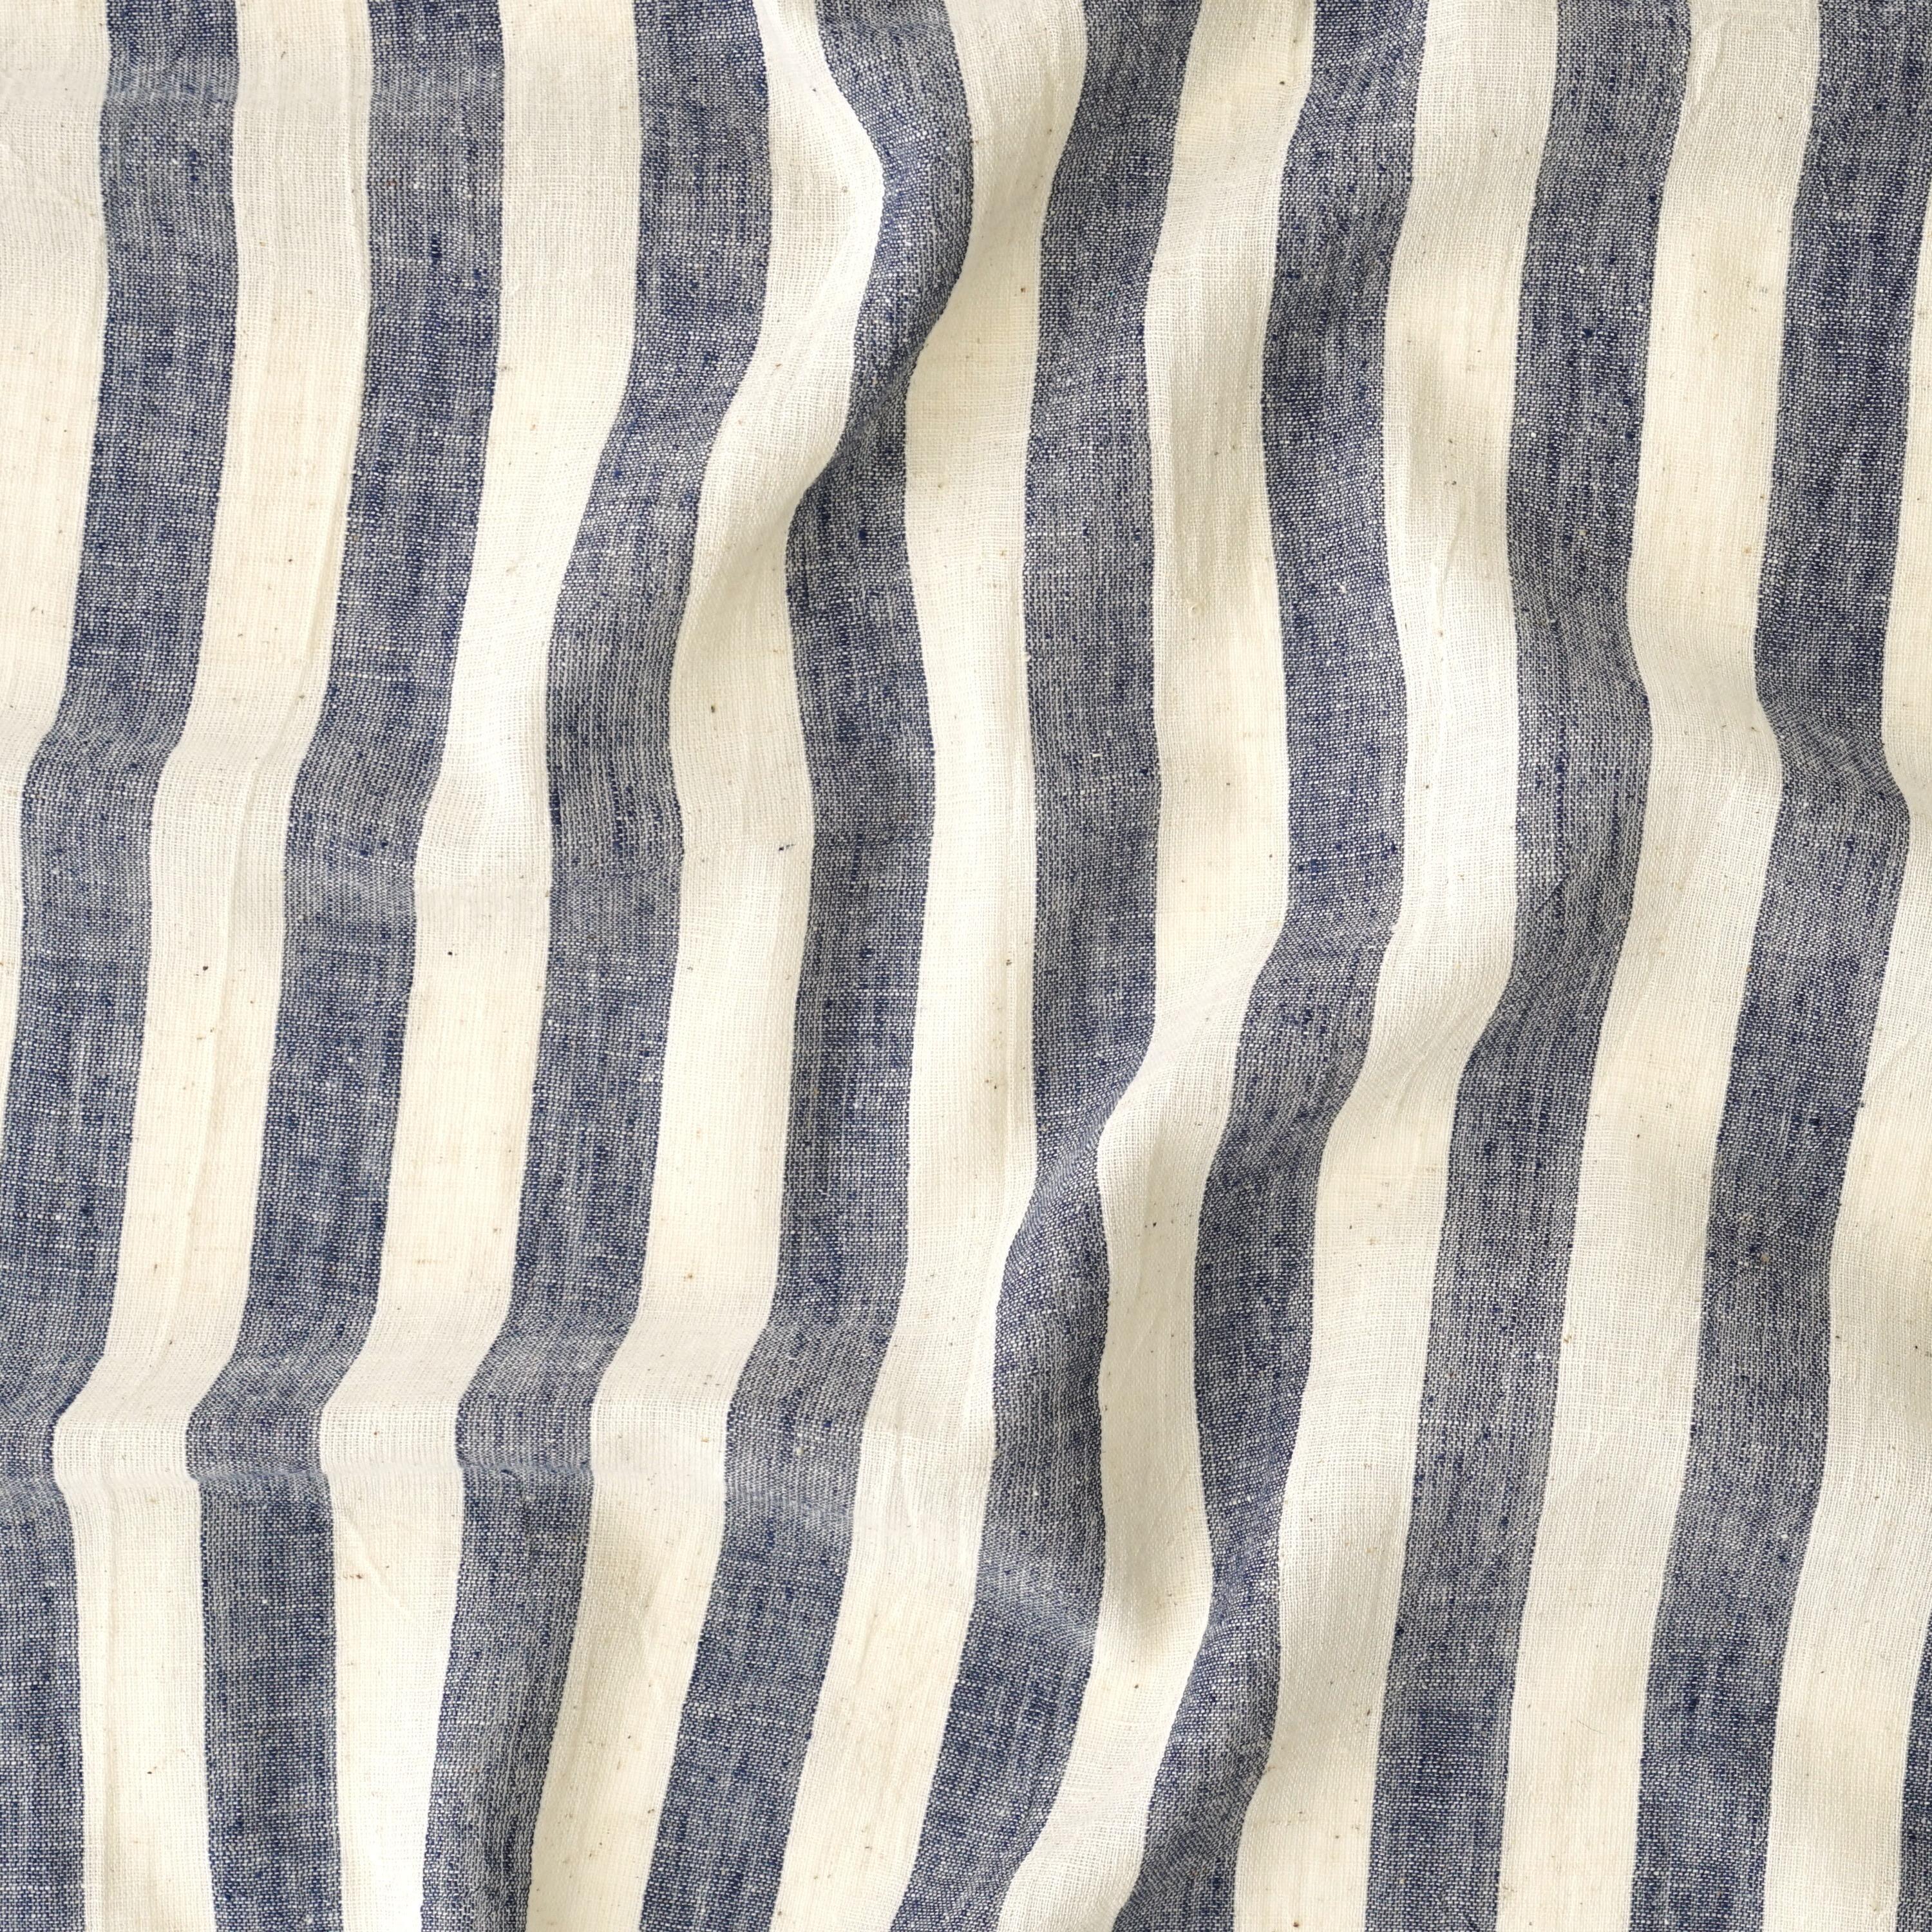 KJC03 - Organic Kala Cotton - Handloom Woven - Plain Weave - 1 by 1 - Stripes - Blue Yarn Dye - Contrast